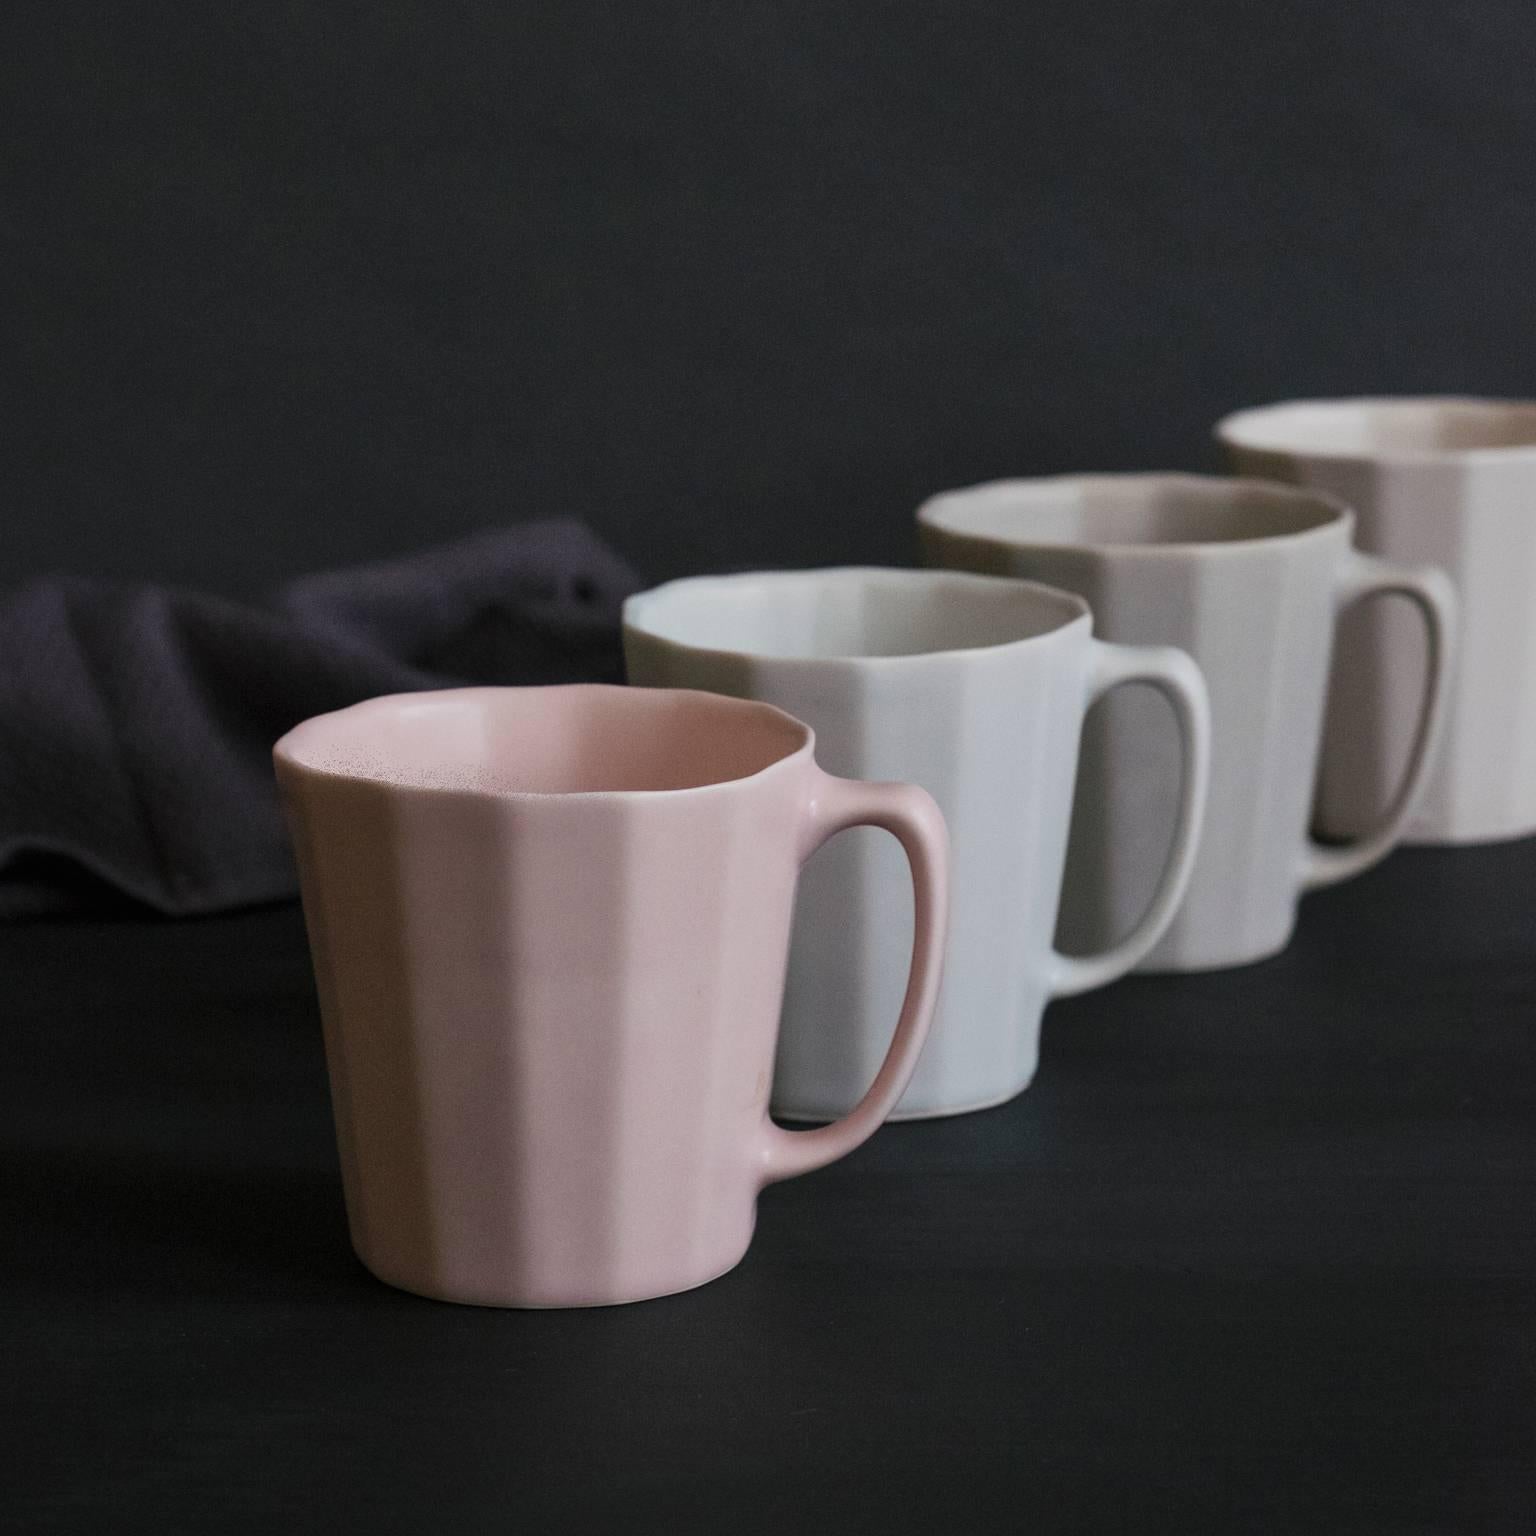 American Monday Mug Blue Matte Set of Four Coffee Mug Contemporary Glazed Porcelain